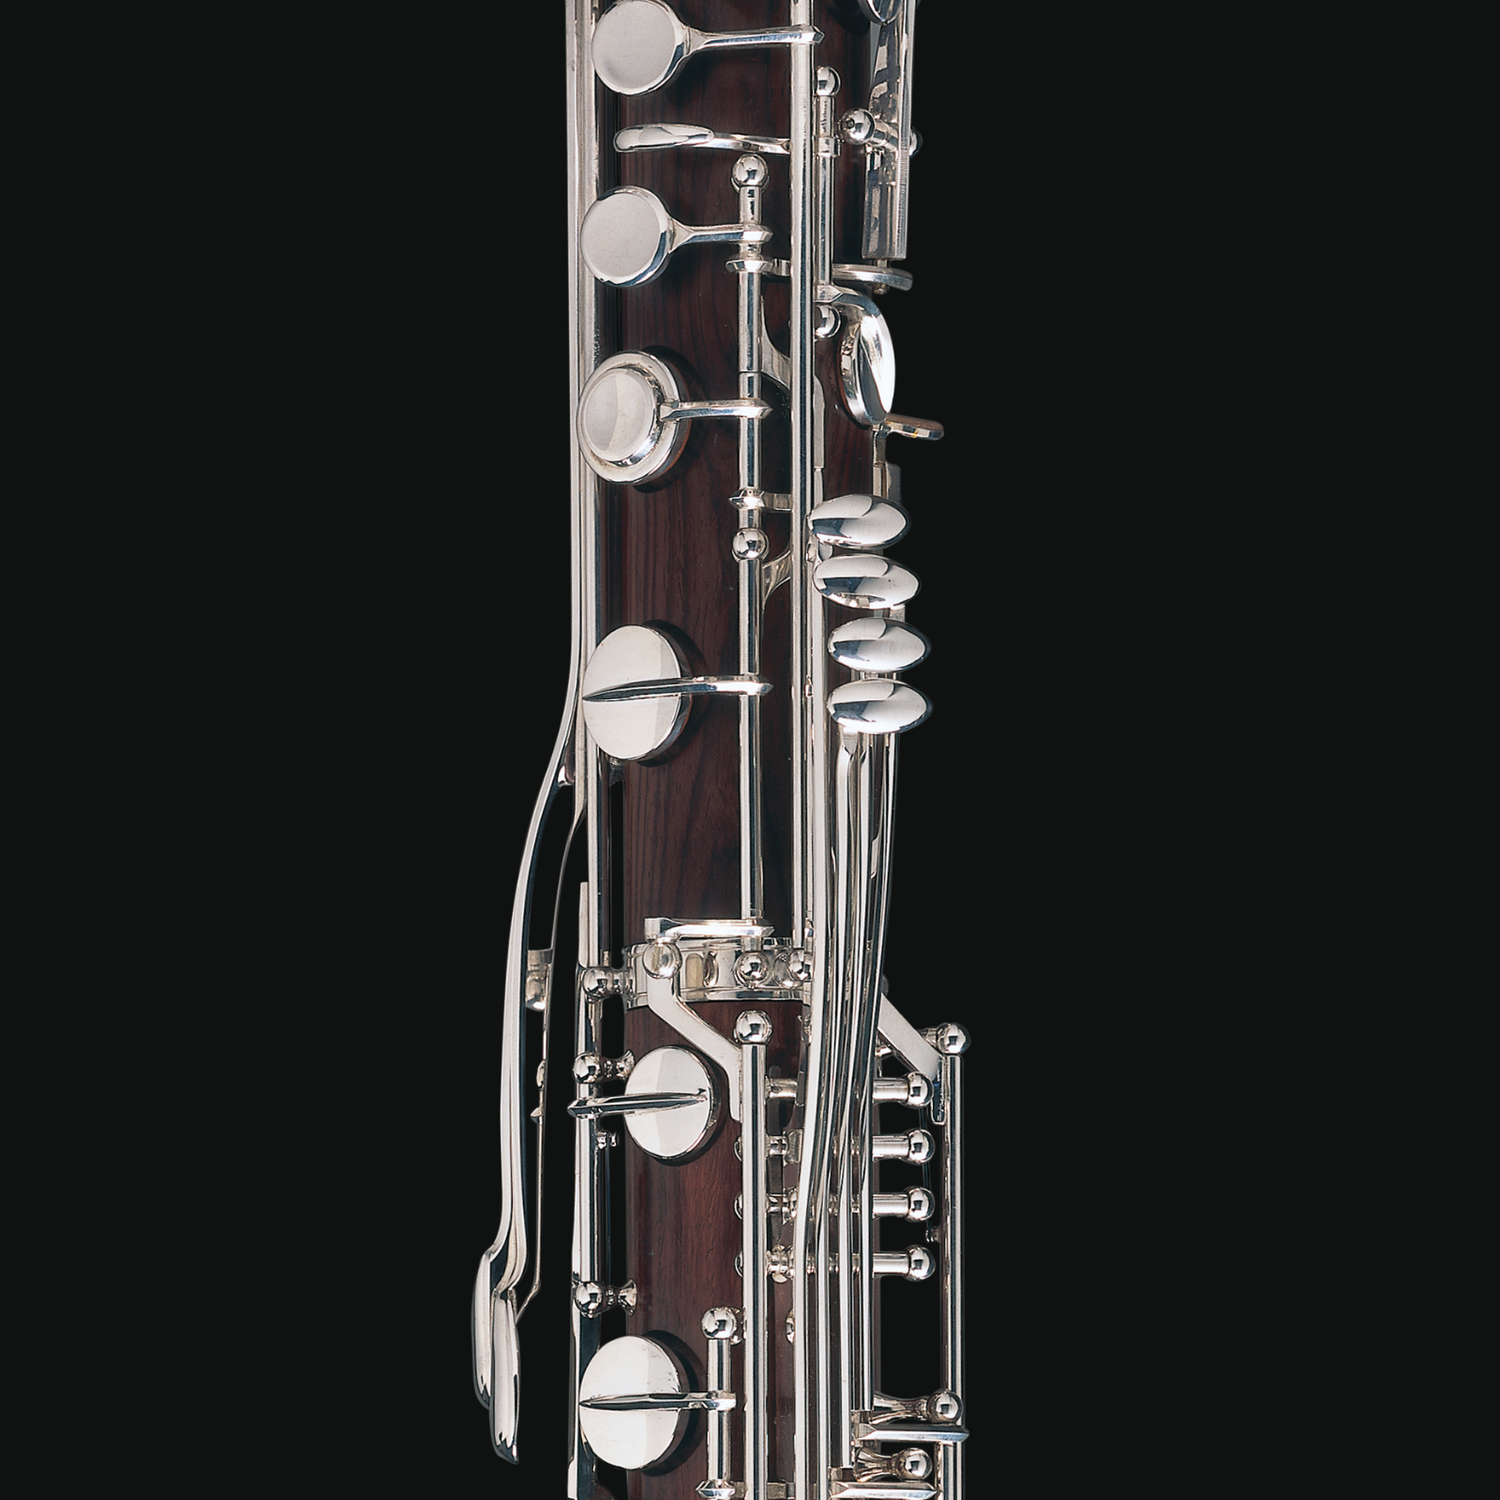 Contralto clarinet